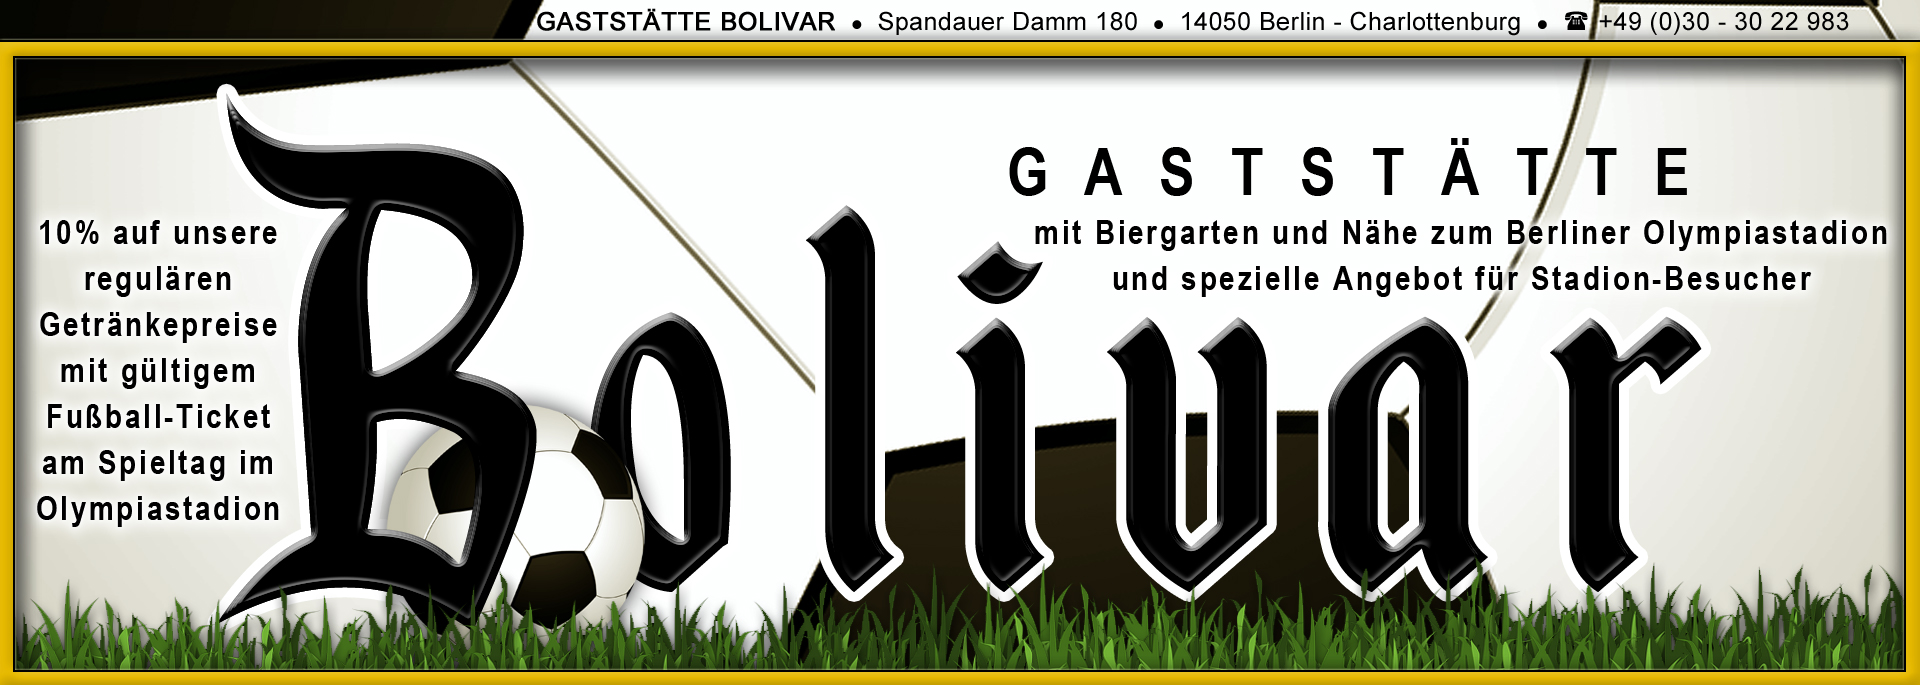 bolivar-gaststaette-lokal-imbiss-restaurant-essen-bier-trinken-gartenlokal-biergarten-berlin-charlottenburg-bundes-liga-fussball-naehe-olympiastadion-fan-treff-treffpunkt